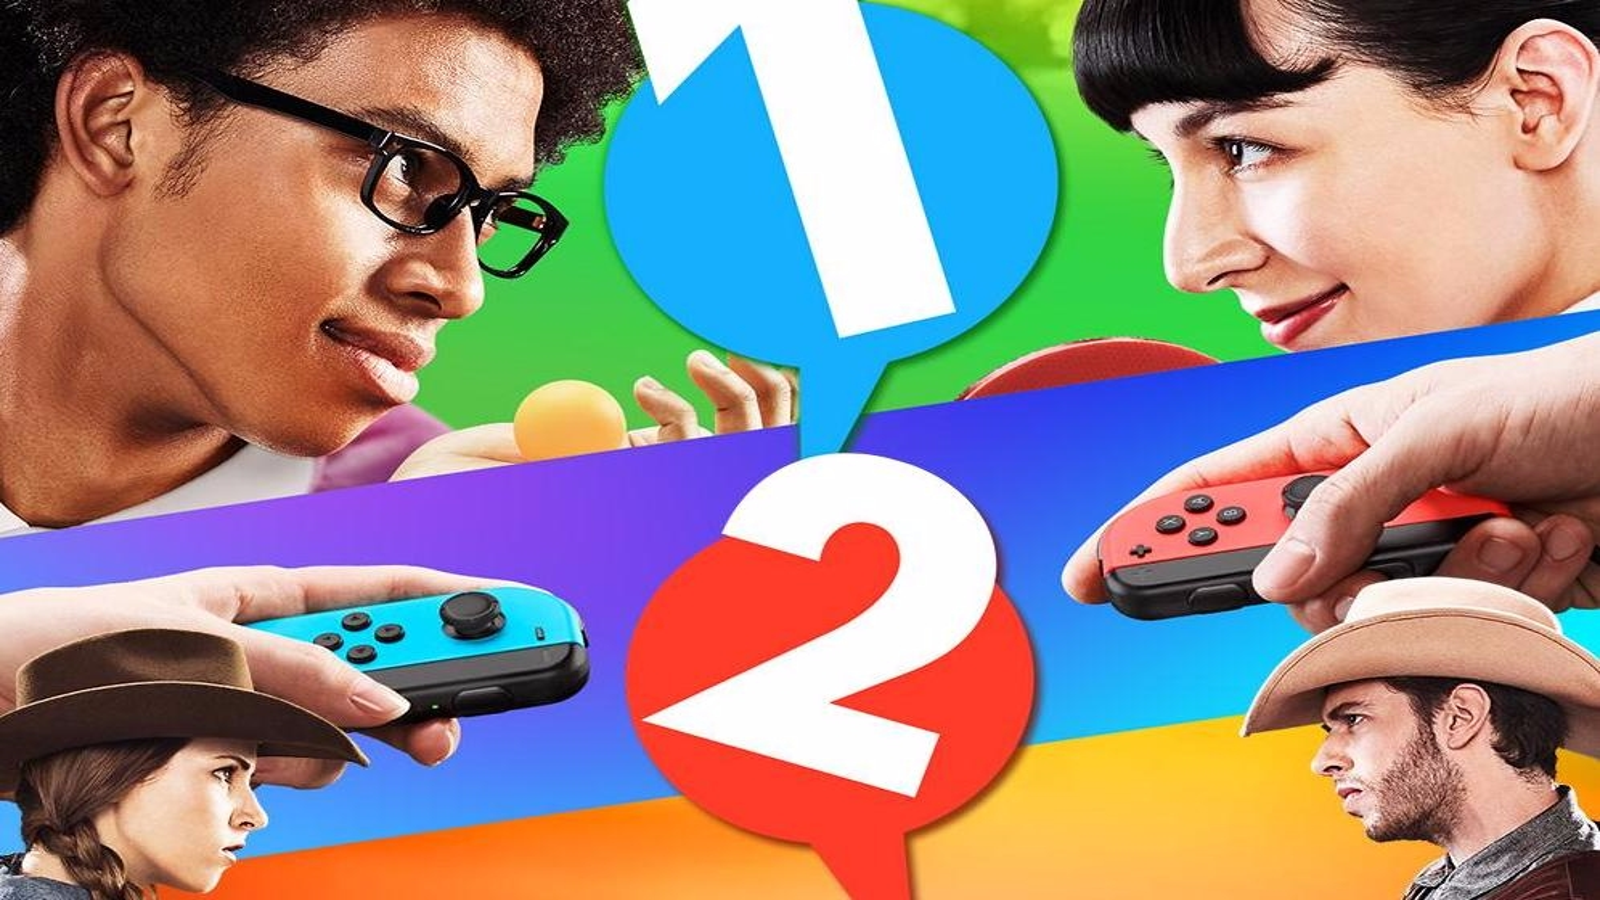 Nintendo switch 1 2 switch. 1-2-Switch (Nintendo Switch). Nintendo Switch 2. One two Switch. One two Nintendo Switch.